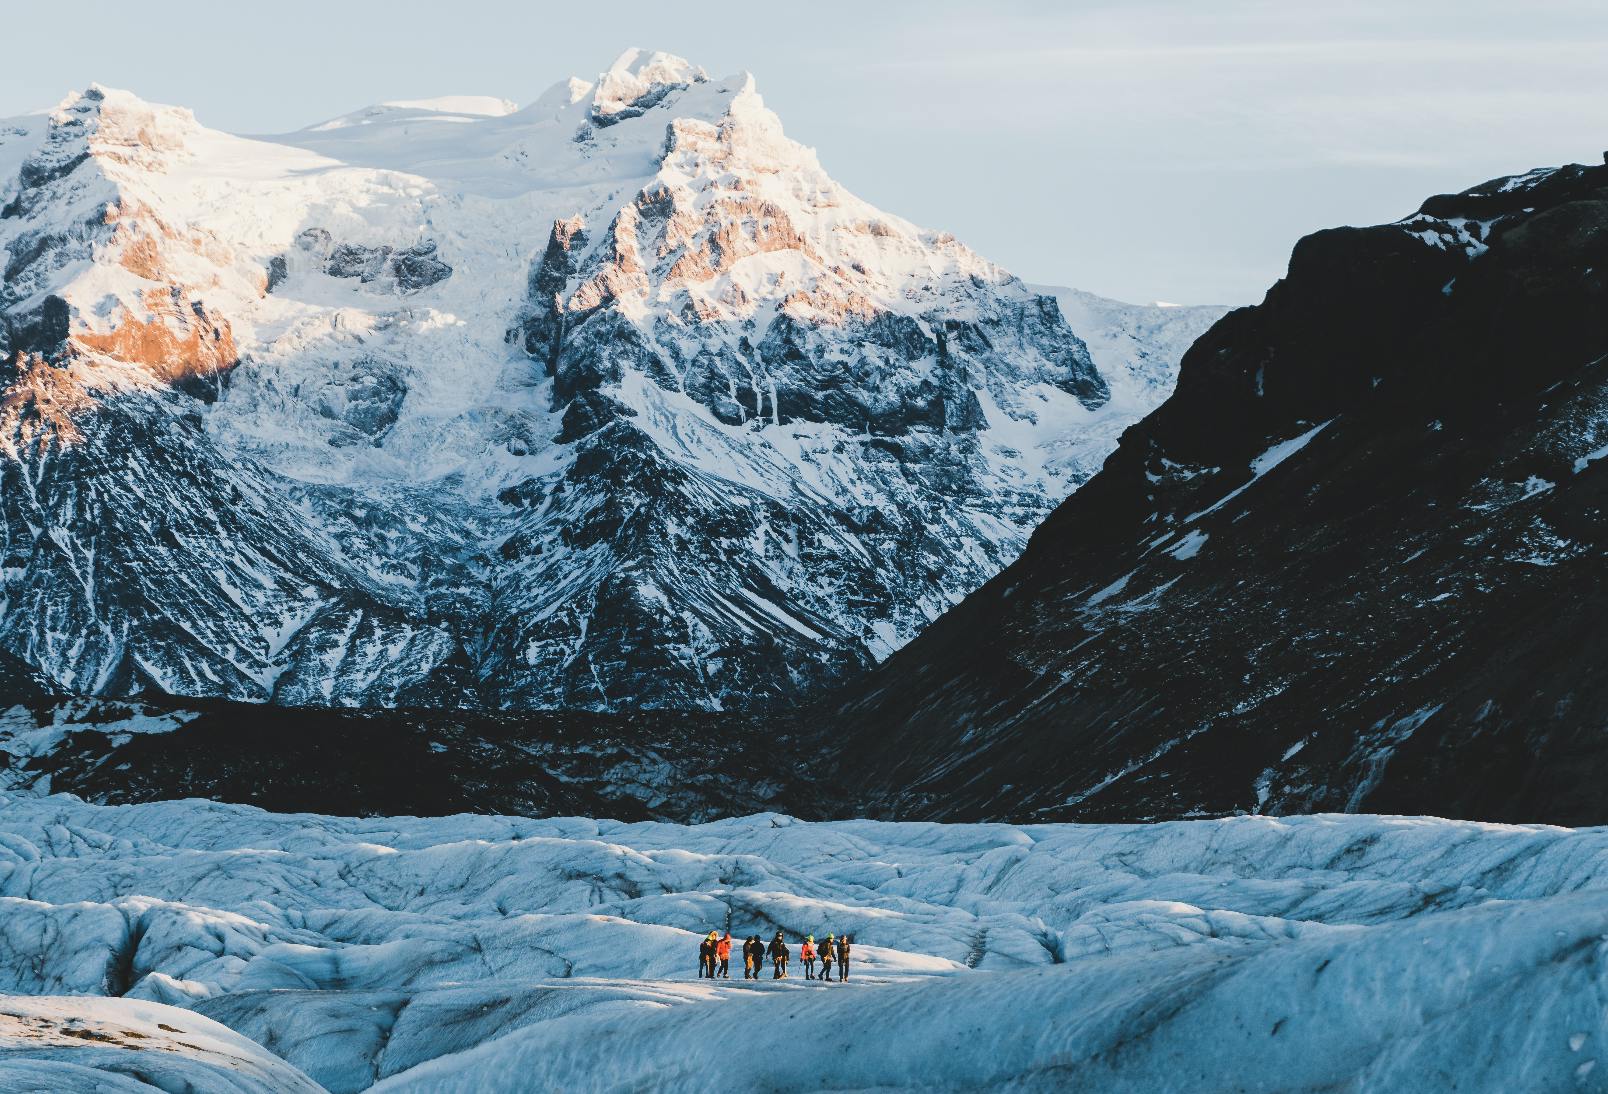 แพ็คเกจ 2 วัน ทัวร์ถ้ำน้ำแข็ง & ชายฝั่งทางใต้ | ปีนกลาเซียร์ เที่ยวโจกุลซาลอน & ดูแสงเหนือ